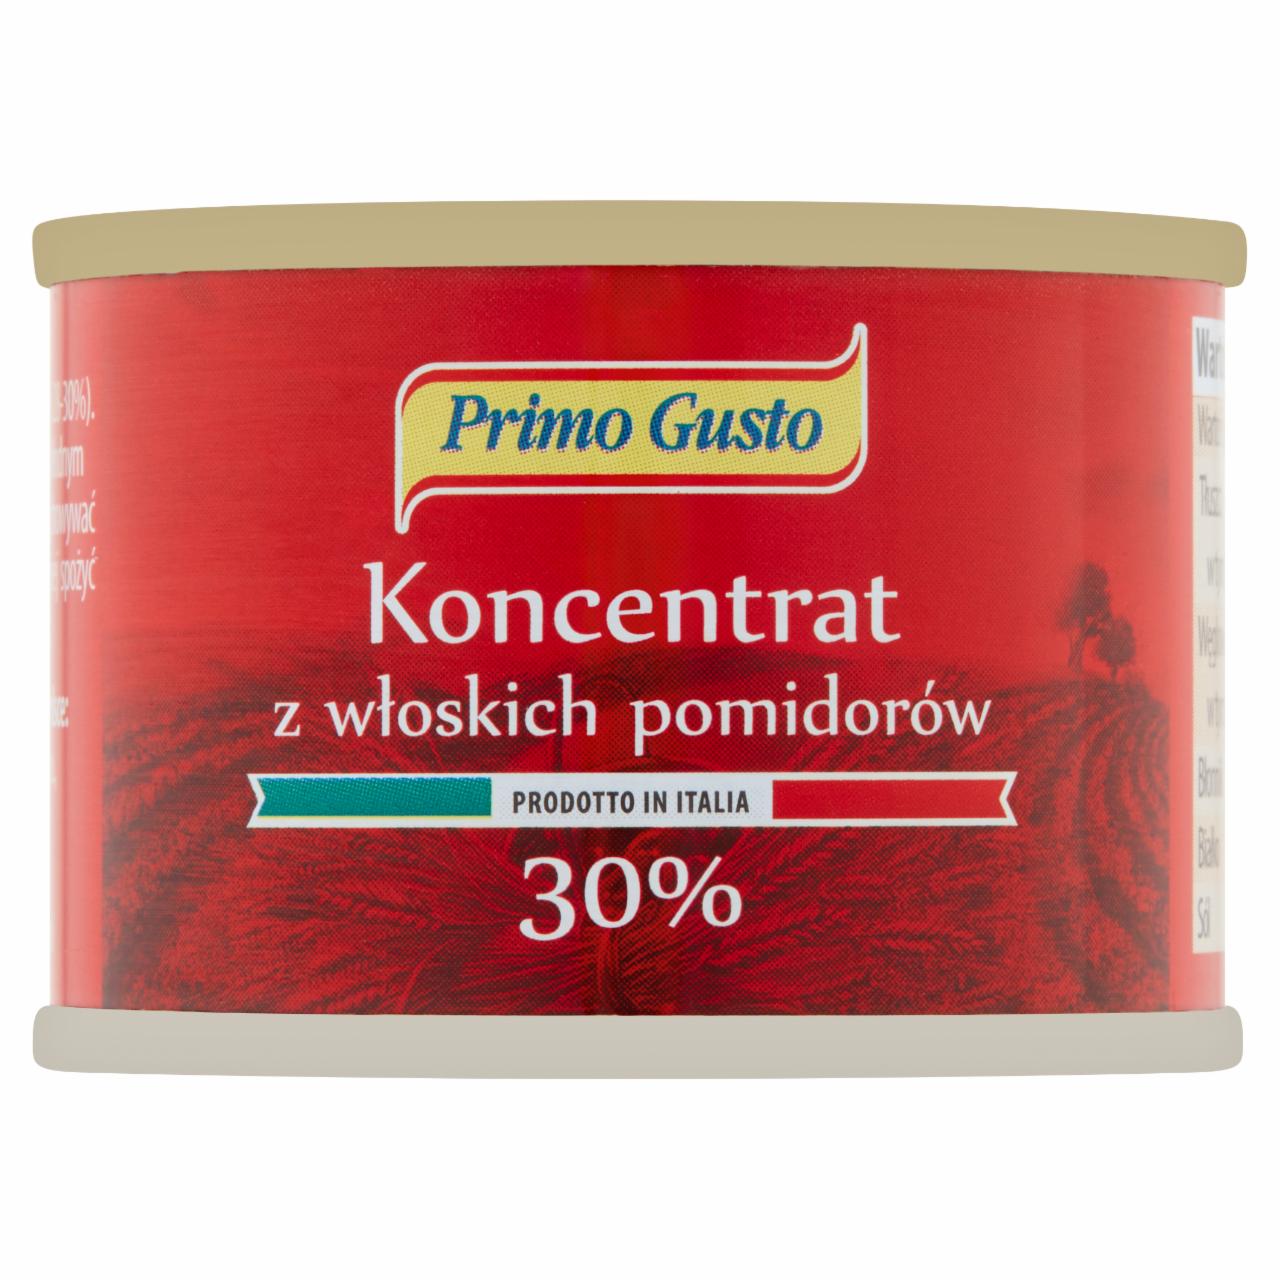 Zdjęcia - Primo Gusto Koncentrat z włoskich pomidorów 30% 70 g